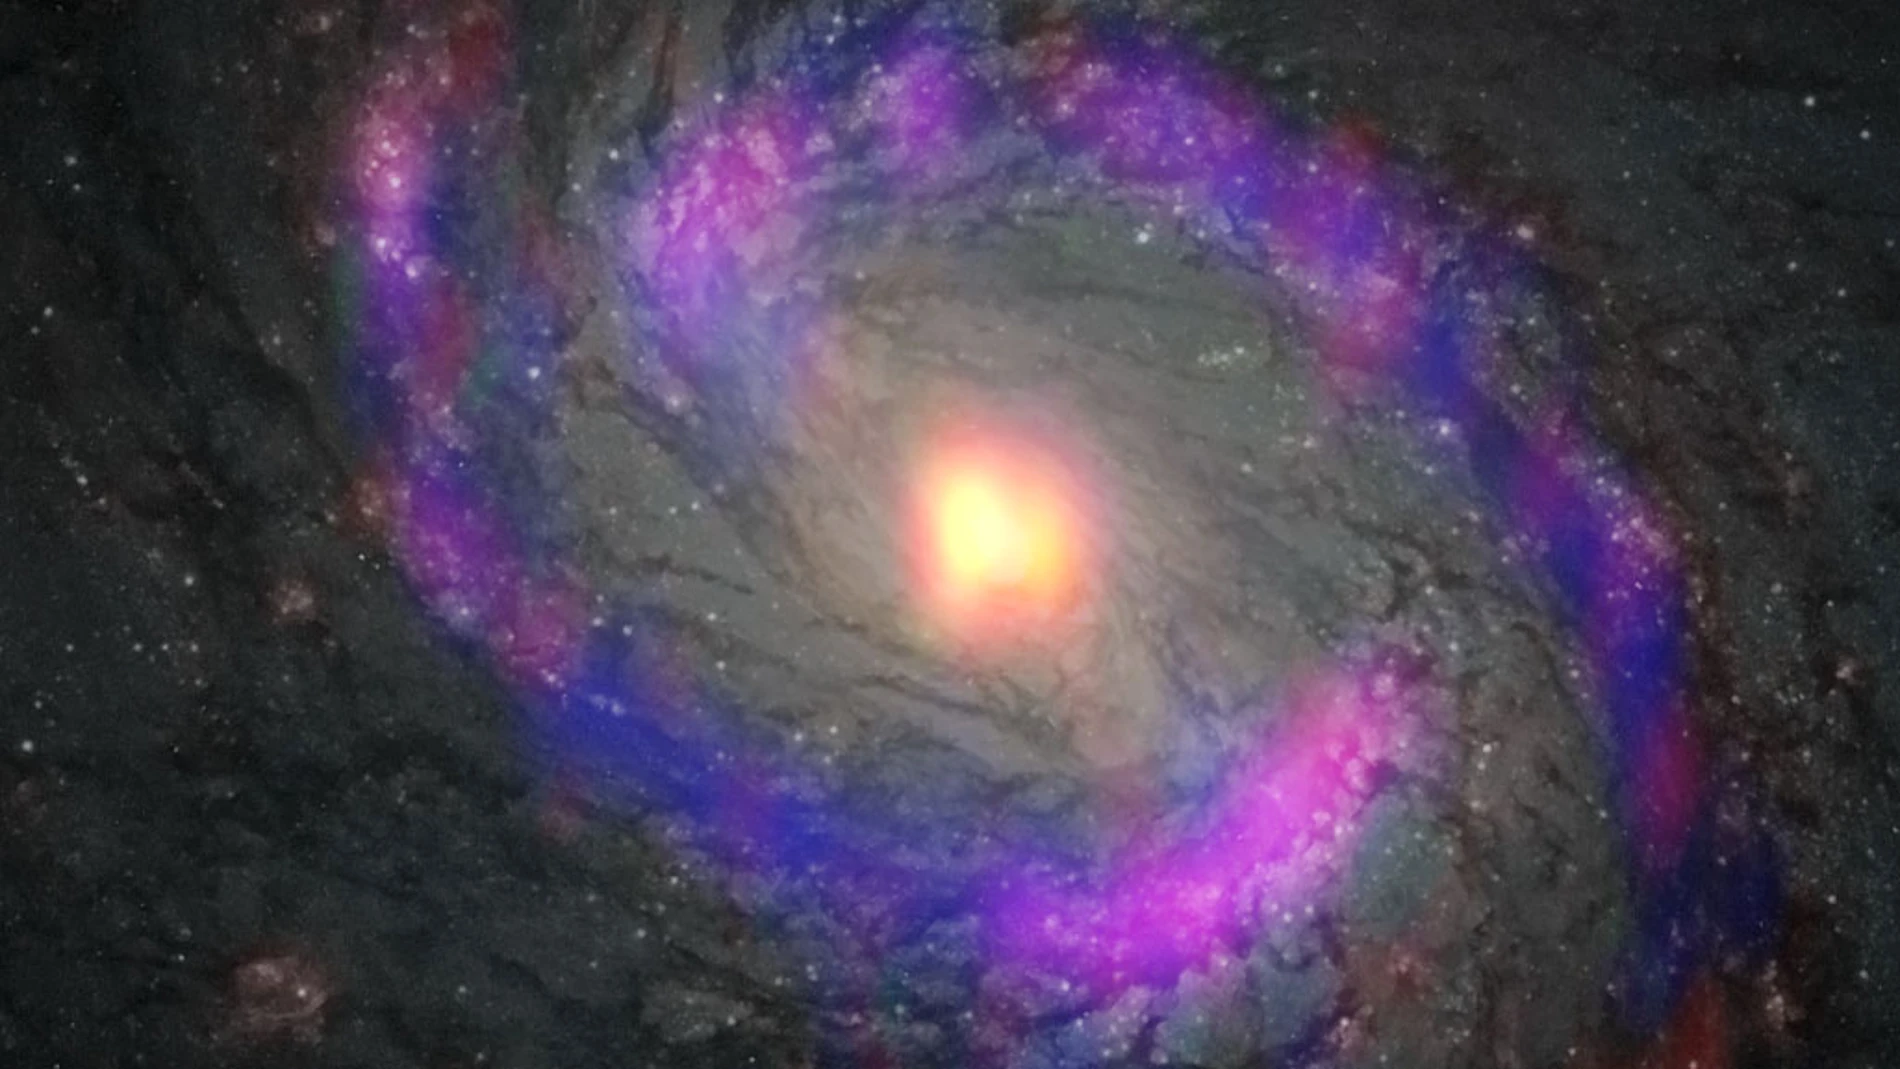 Zona central de la galaxia M77, también conocida como NGC 1068, observada por ALMA y el telescopio espacial Hubble de NASA/ESA.